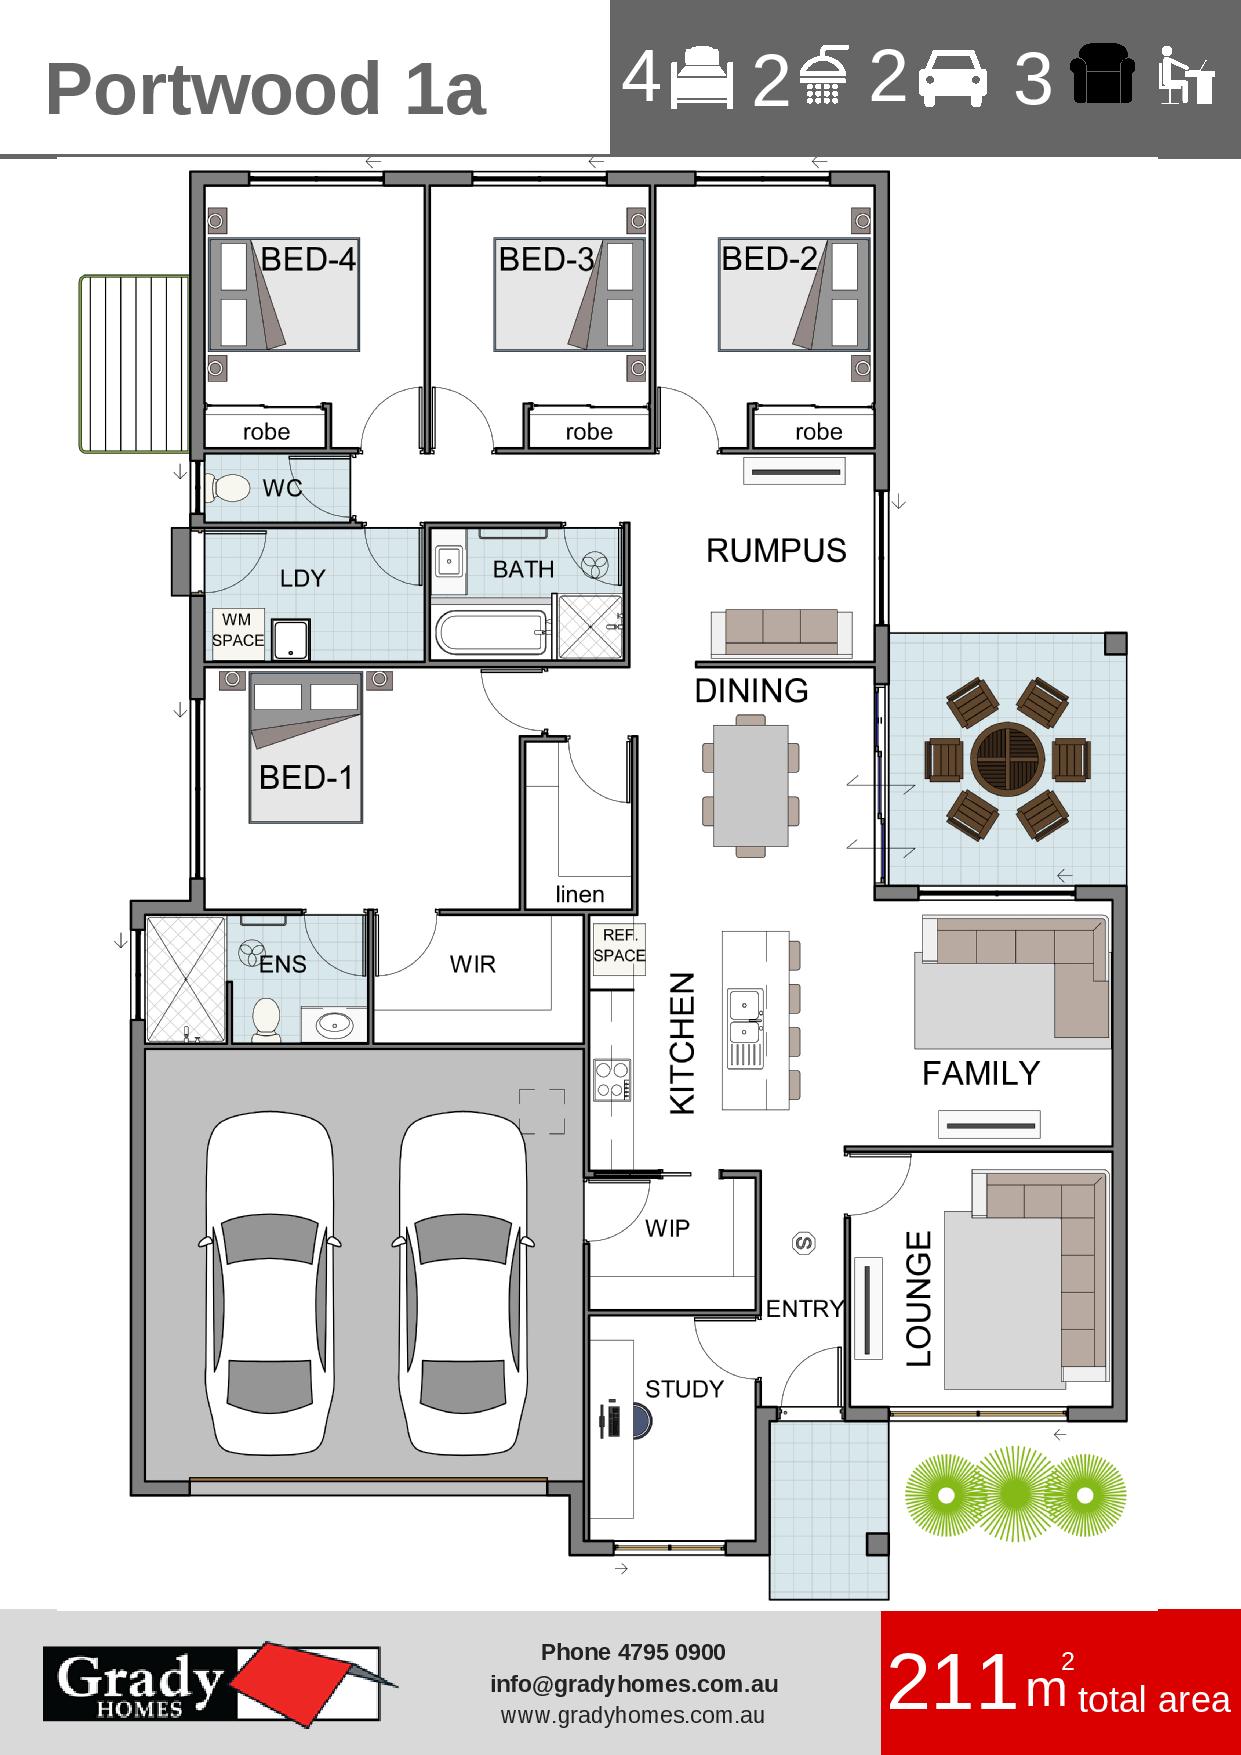 Portwood 1a - Grady Homes Floor Plan